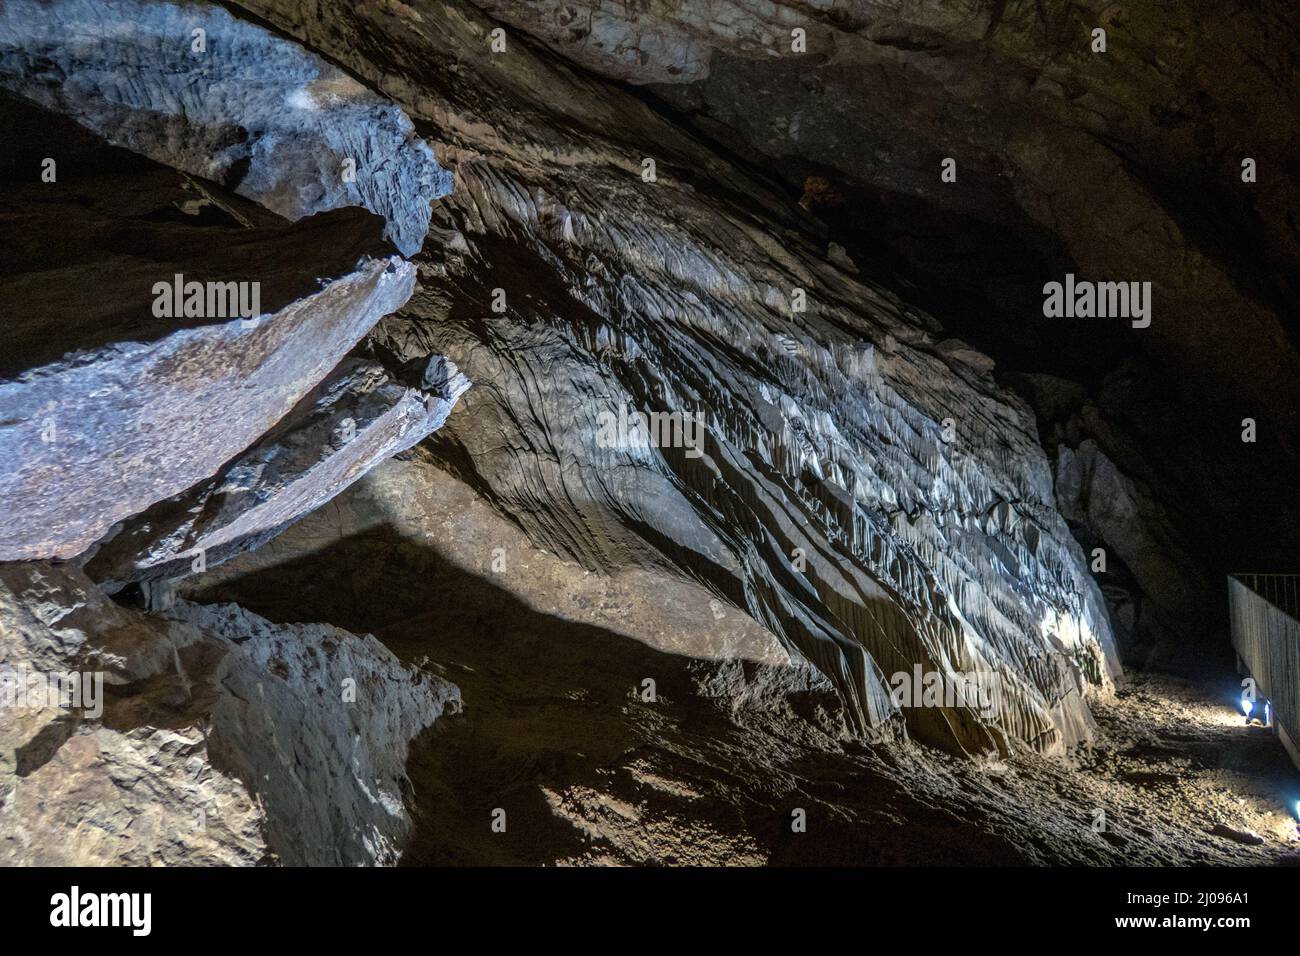 Regno Unito, Inghilterra, Somerset, Wookey Hole Caves. Rillenkarren o fluting causato da acqua che scorre sopra la roccia calcarea nella grotta 20. Foto Stock